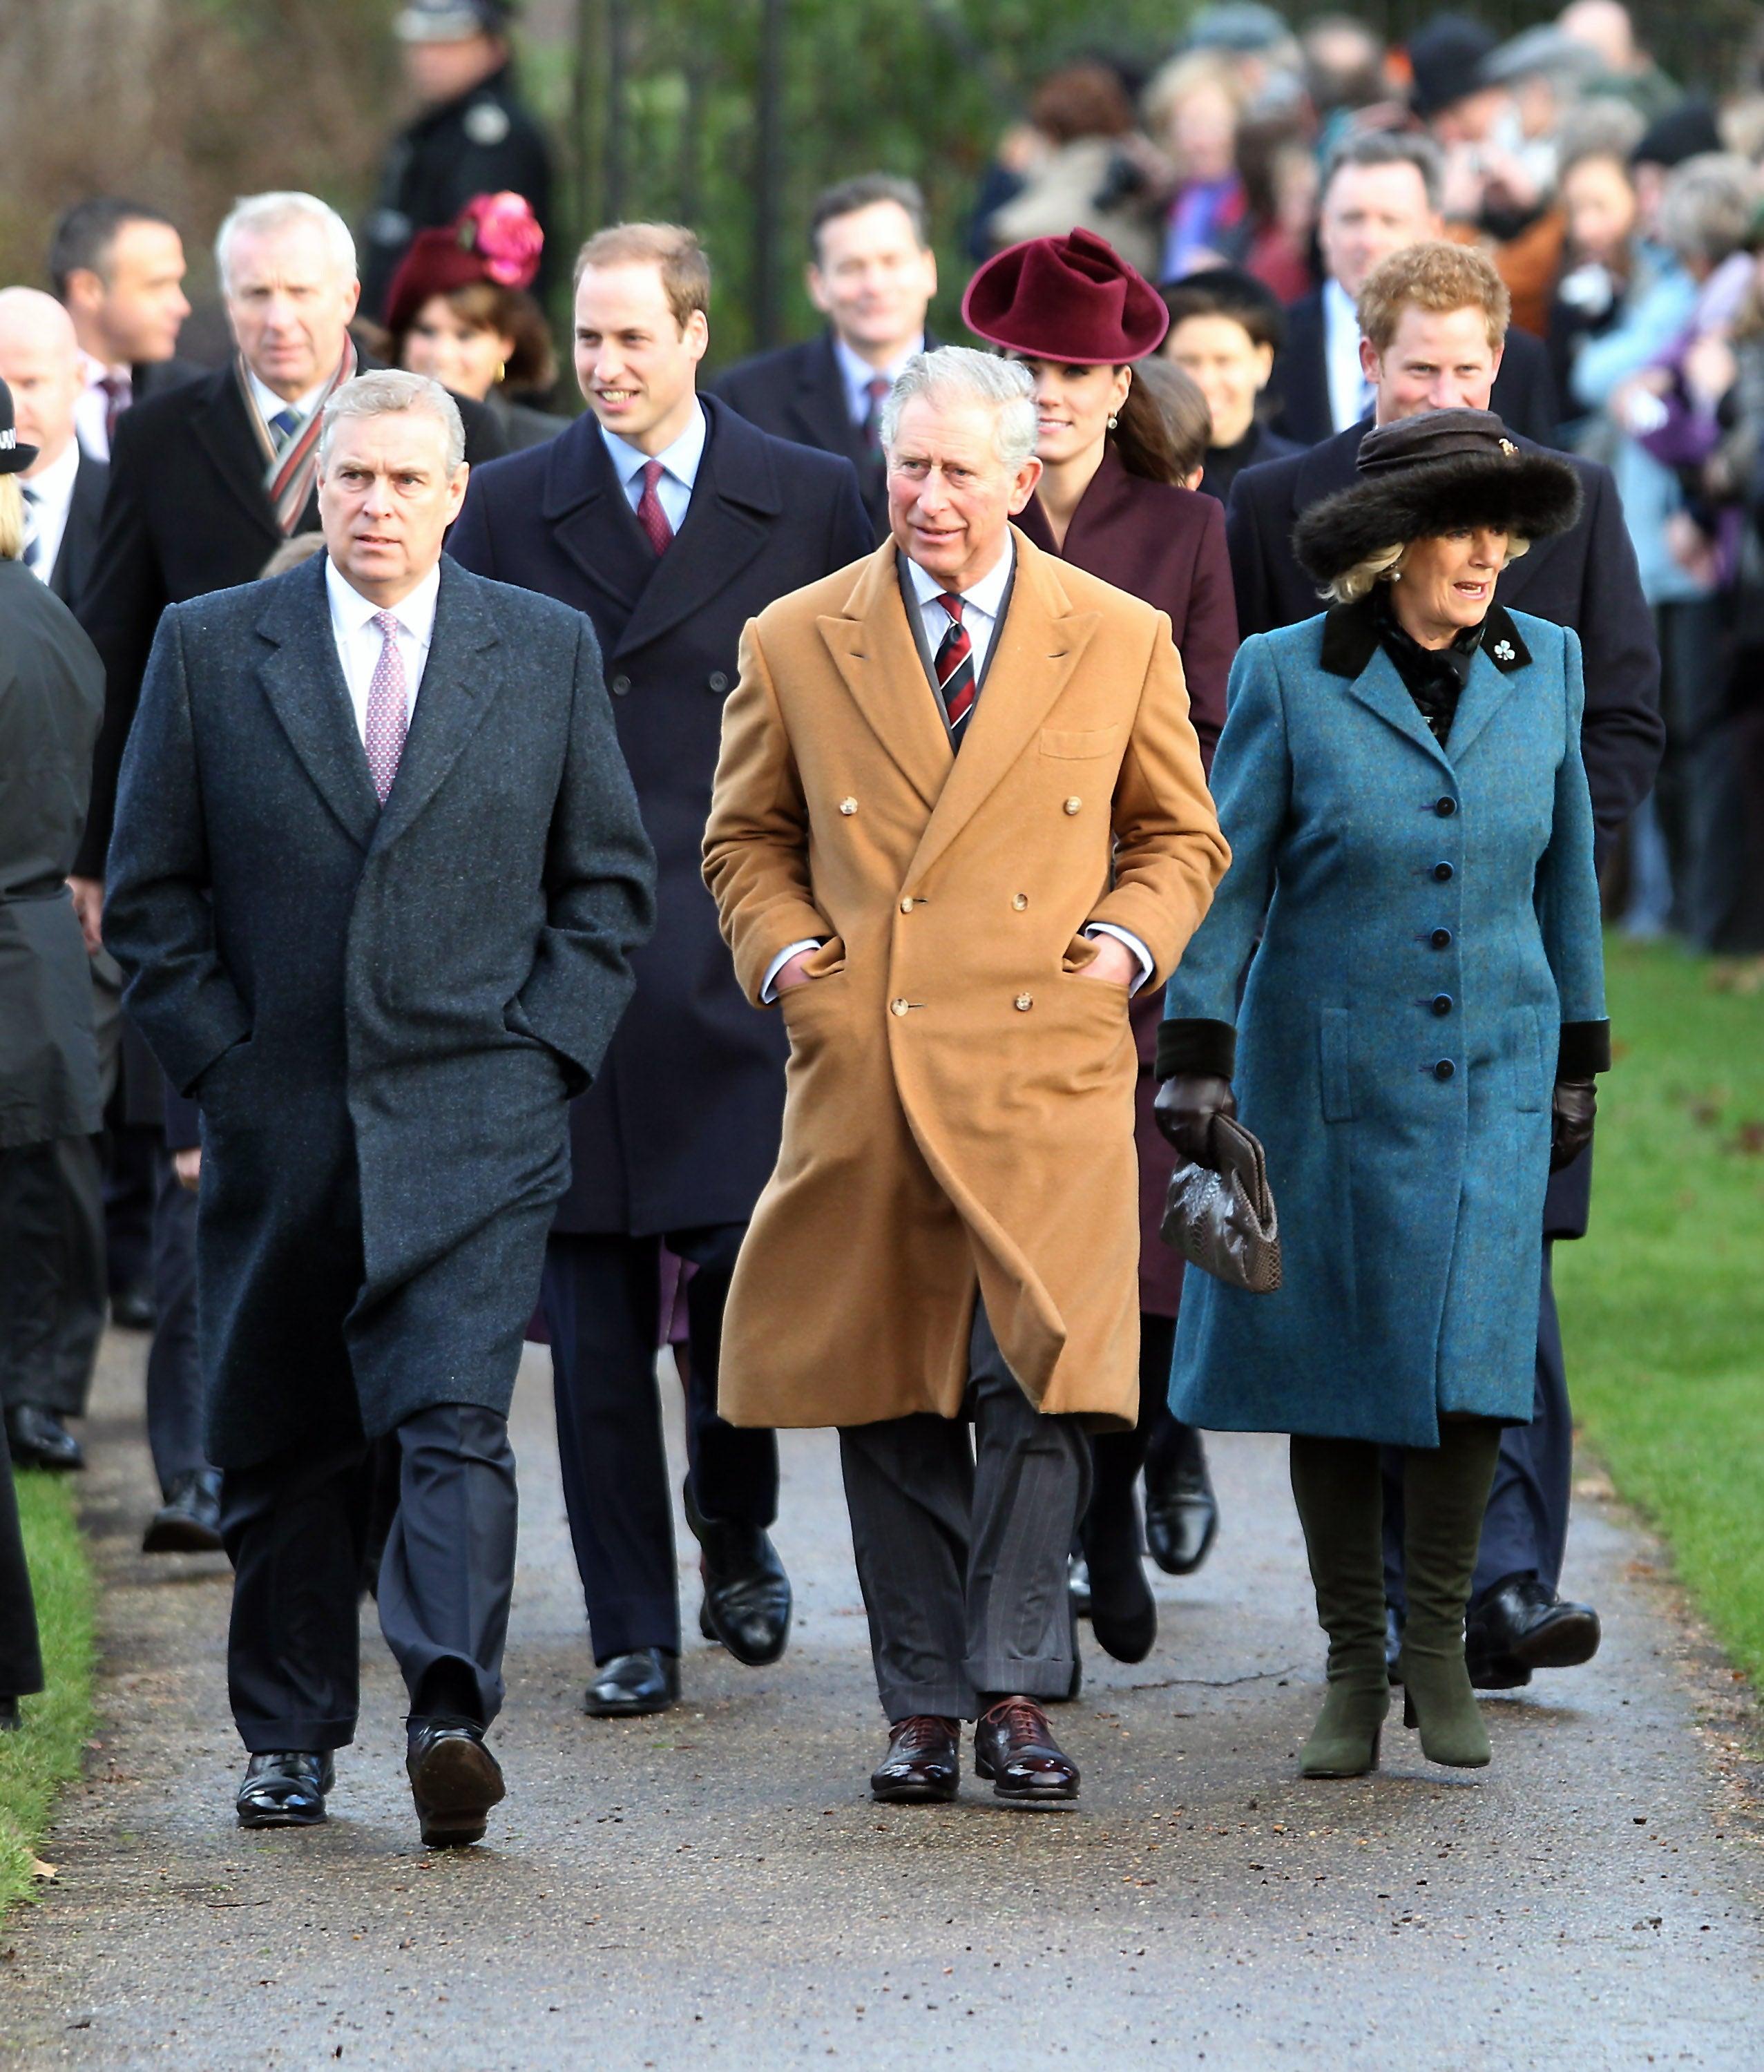 El príncipe Andrew, duque de York, el príncipe William, duque de Cambridge, el príncipe Carlos, príncipe de Gales, Catherine, duquesa de Cambridge, Camilla, duquesa de Cornualles y el príncipe Harry caminan hacia la iglesia de Sandringham para la tradicional ceremonia del día de Navidad en Sandringham el 25 de diciembre de 2011